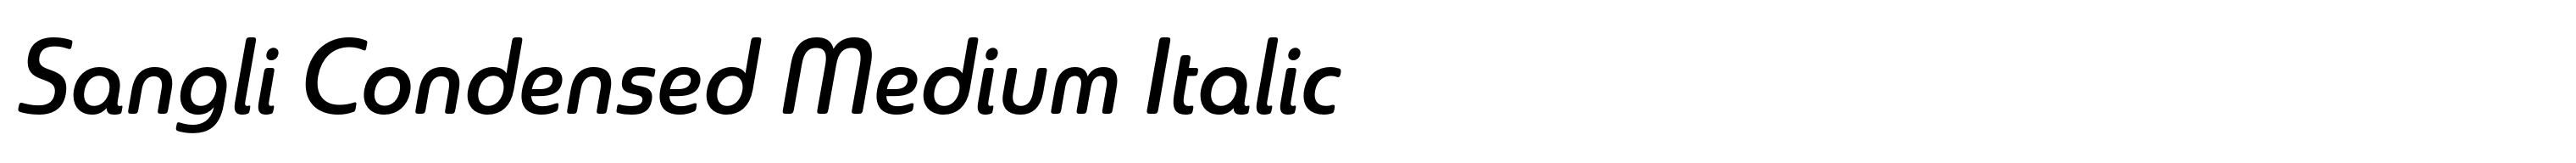 Sangli Condensed Medium Italic